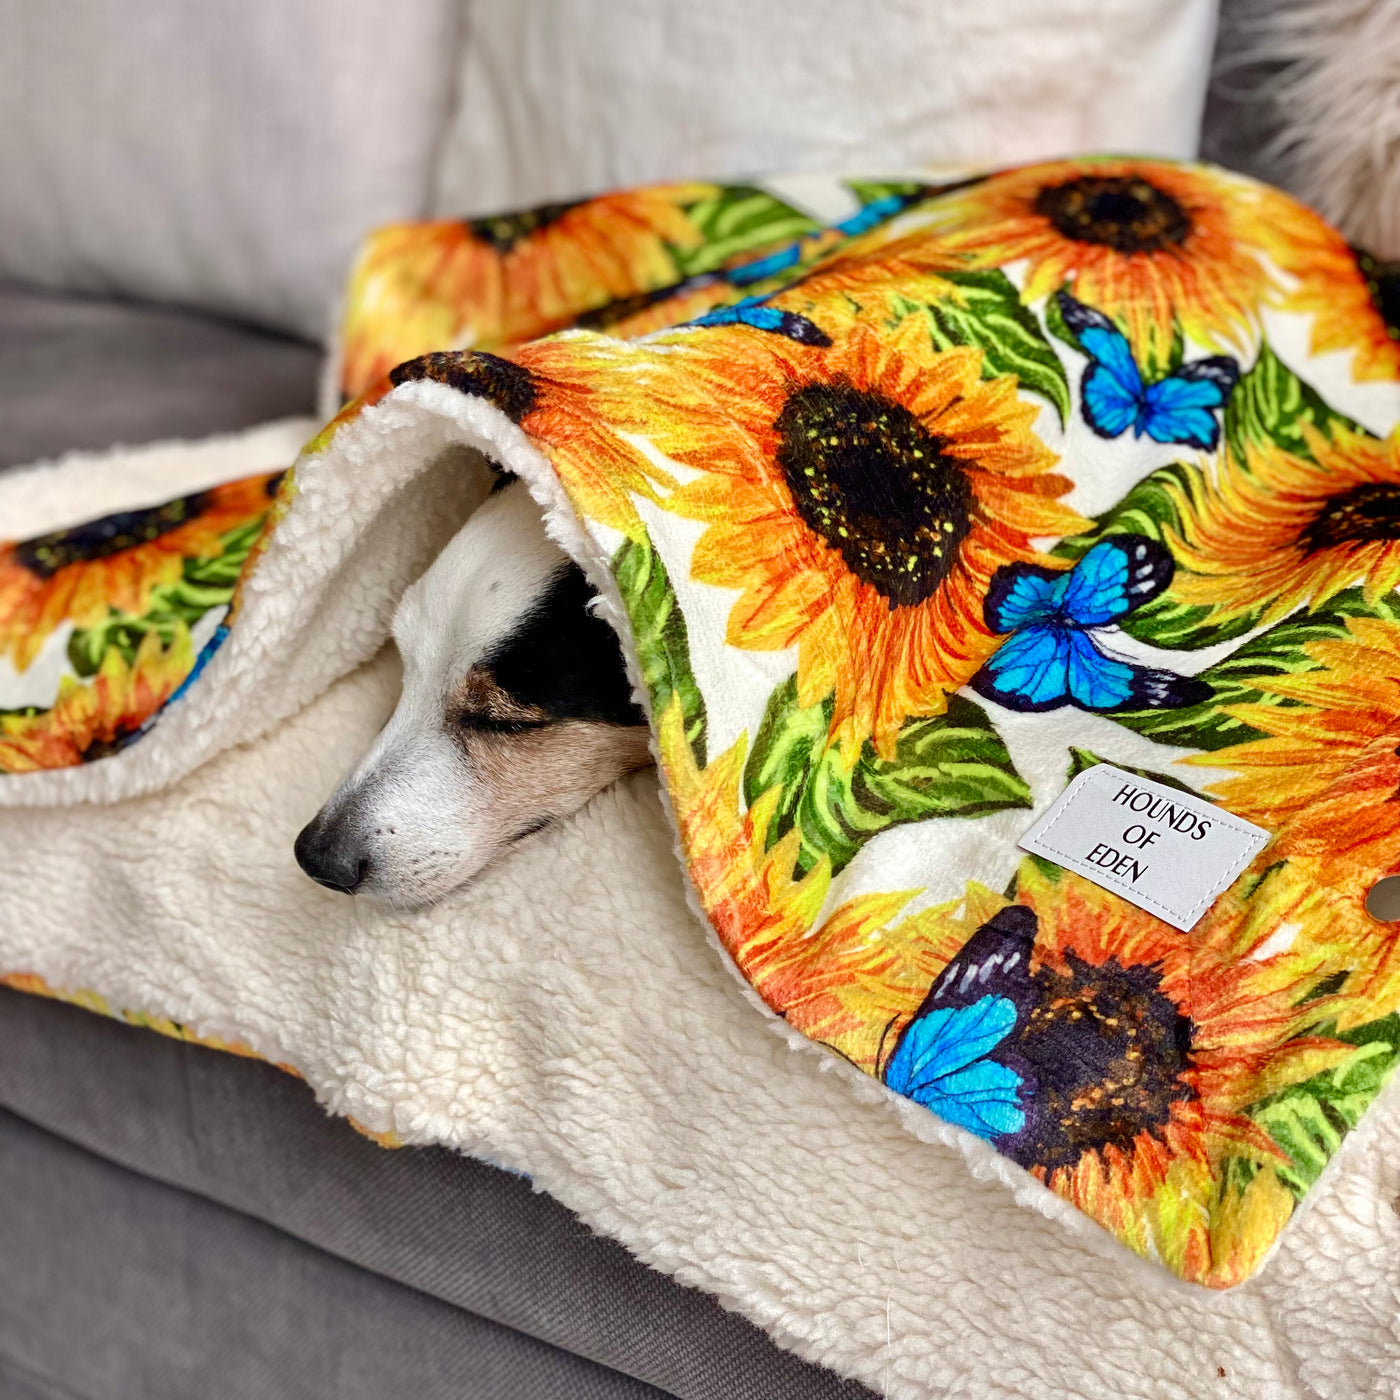 OUTLET - Sunflower Flutter Dog Snuggle Blanket